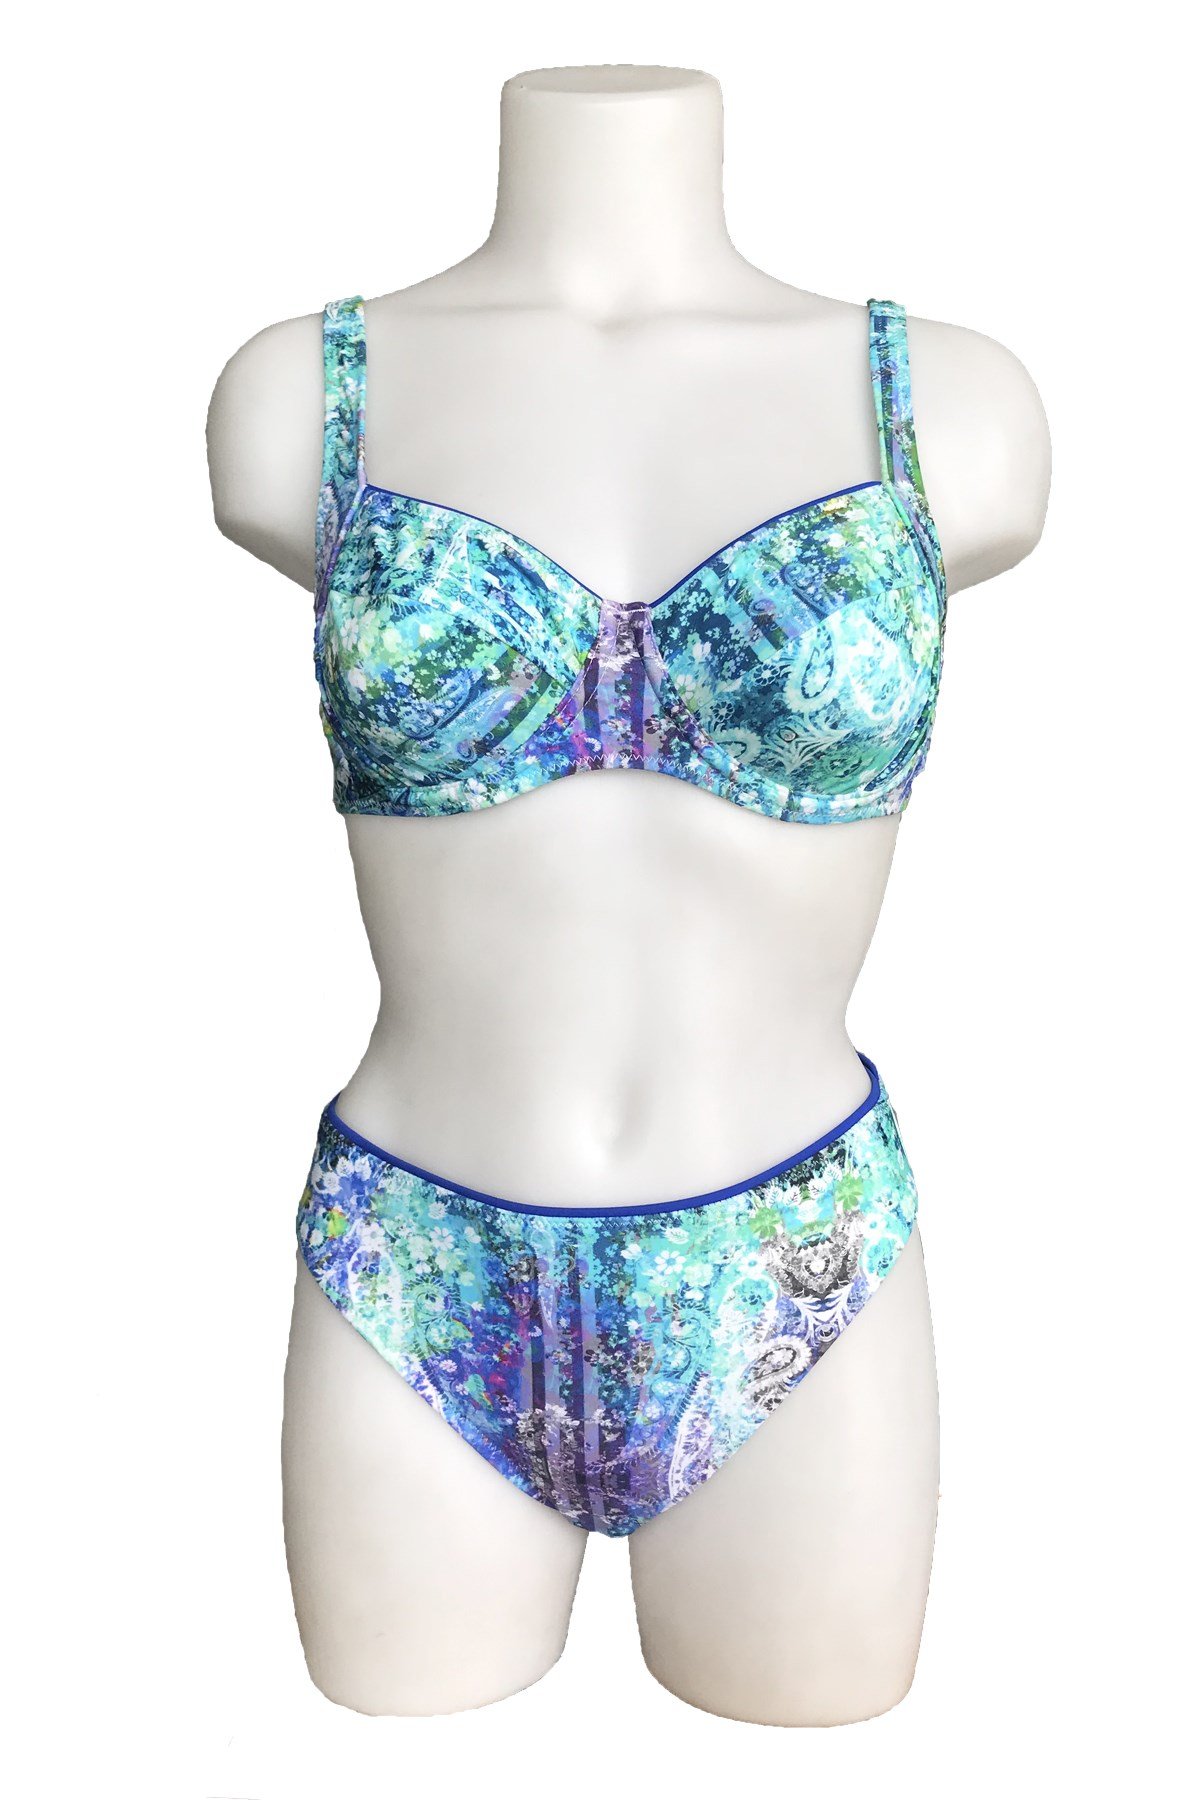 Sunset Balensiz Toparlayıcı Bikini Yeni Sezon! Moda! Ürünler Rakipsiz  Fiyatlar İç Giyim, Ev Tekstili, Kozmetik, Çeyiz ve Daha Fazlası |  yoncatoptan.com